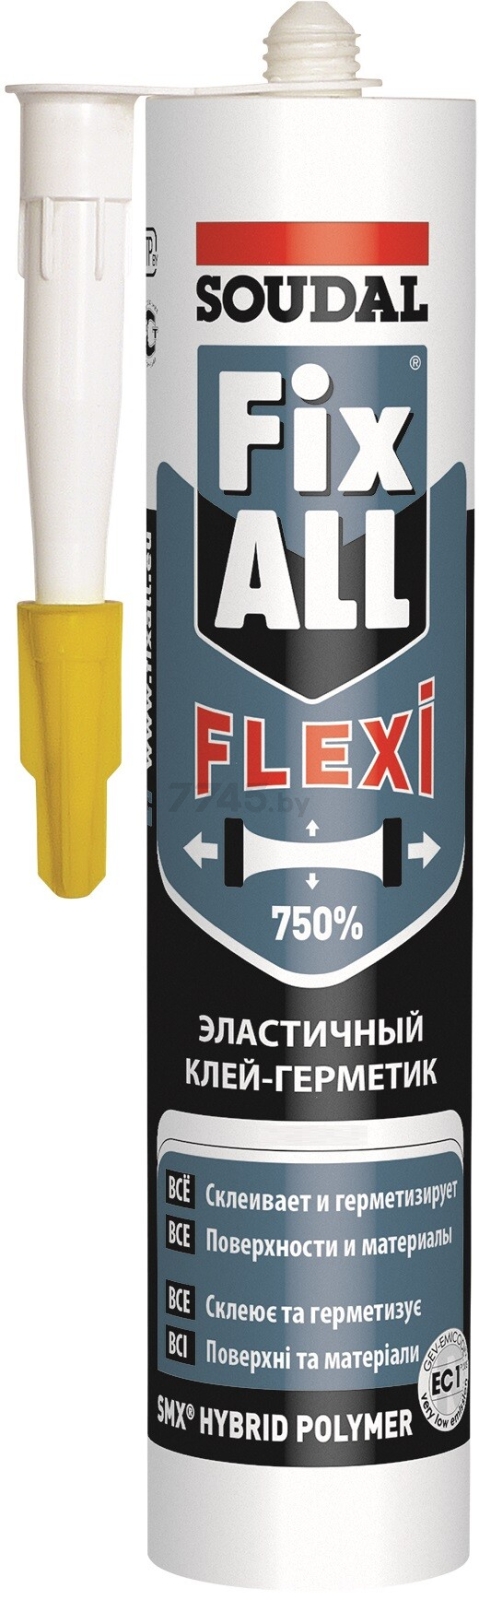 Клей-герметик SOUDAL Fix All Flexi купить в Минске — цены в интернет-магазине 7745.by